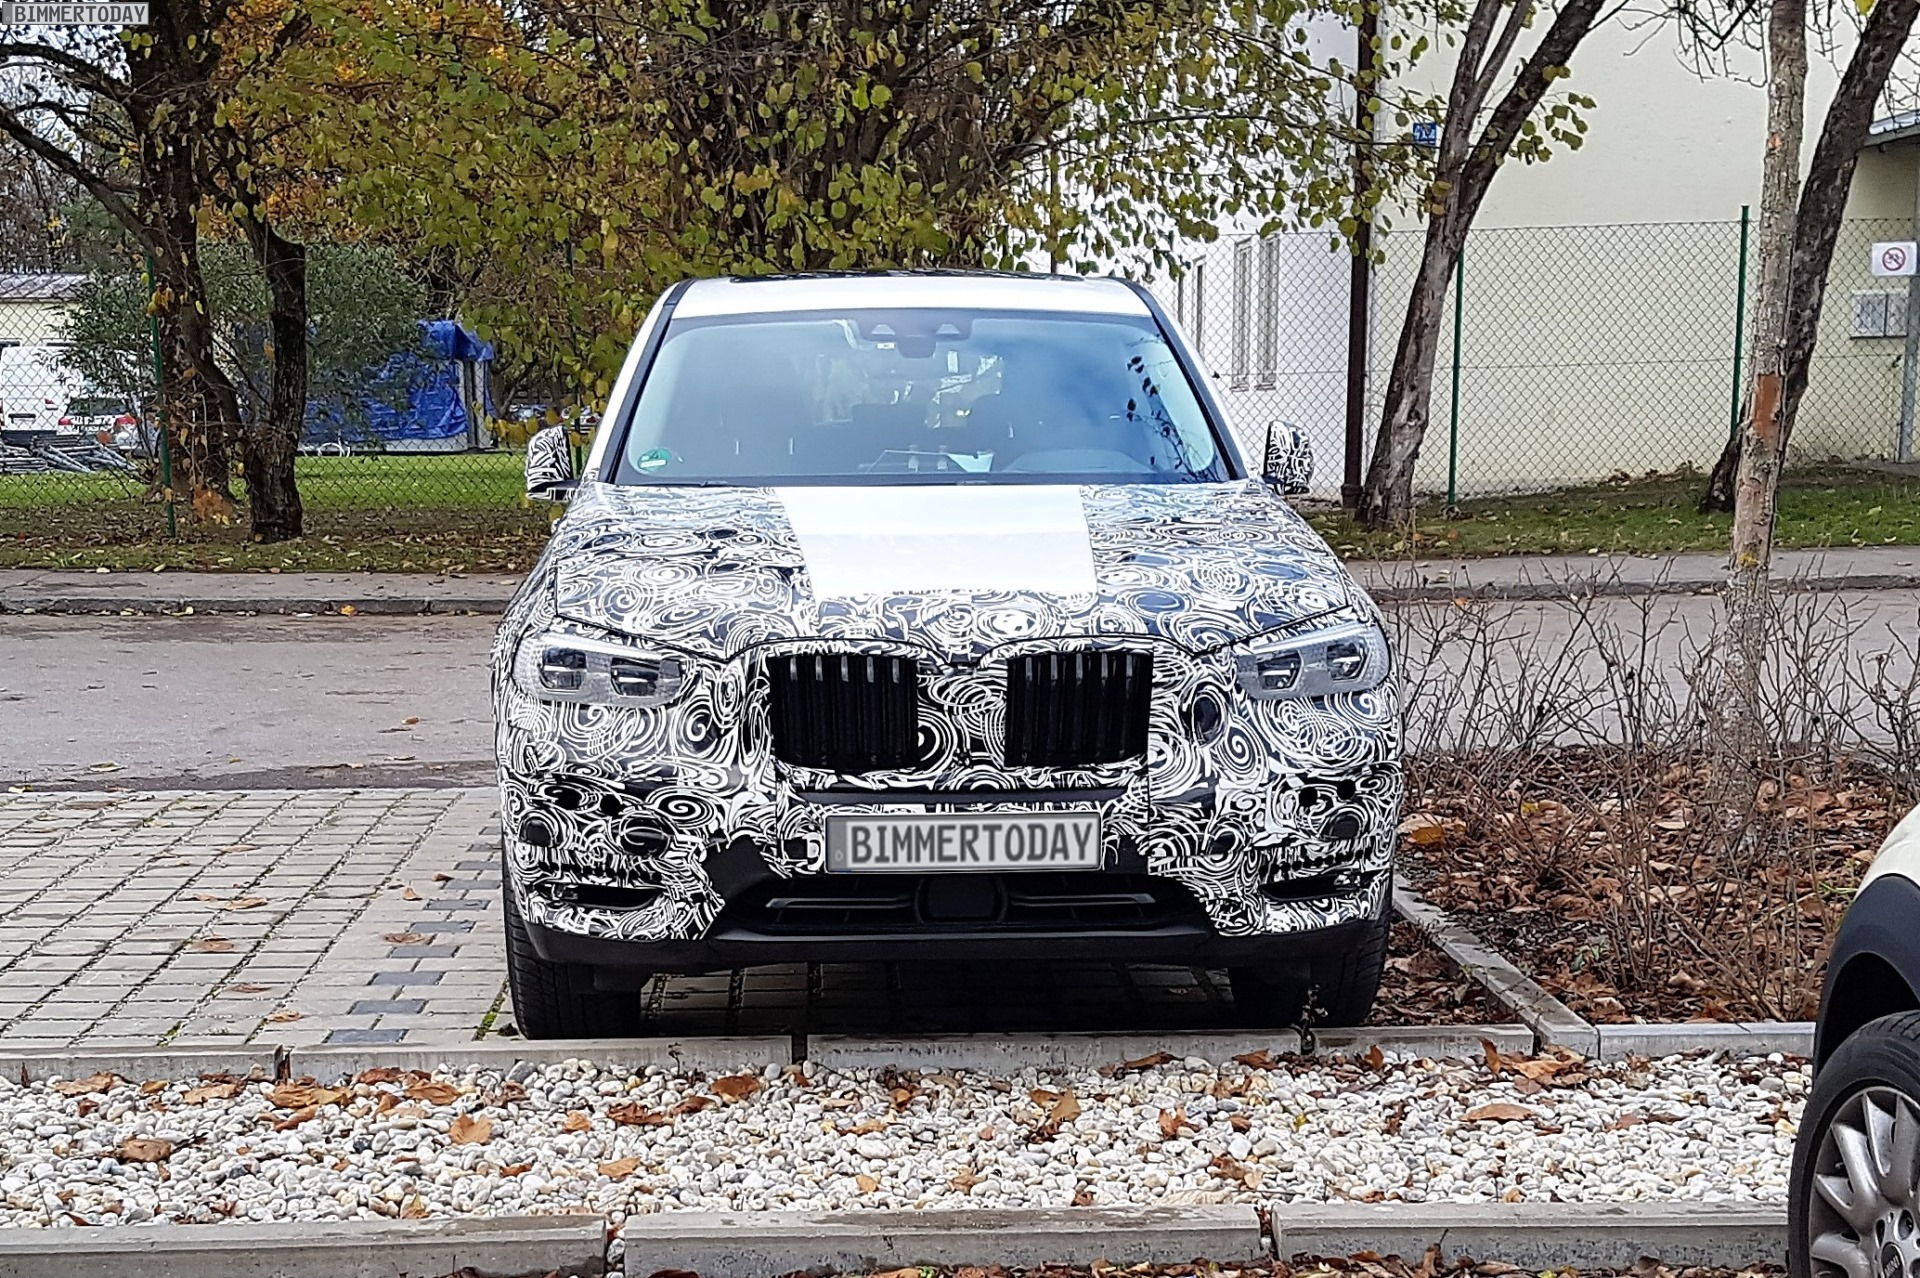 2018 G01 BMW X3 Spy Photos Reveal Heavy Camouflage